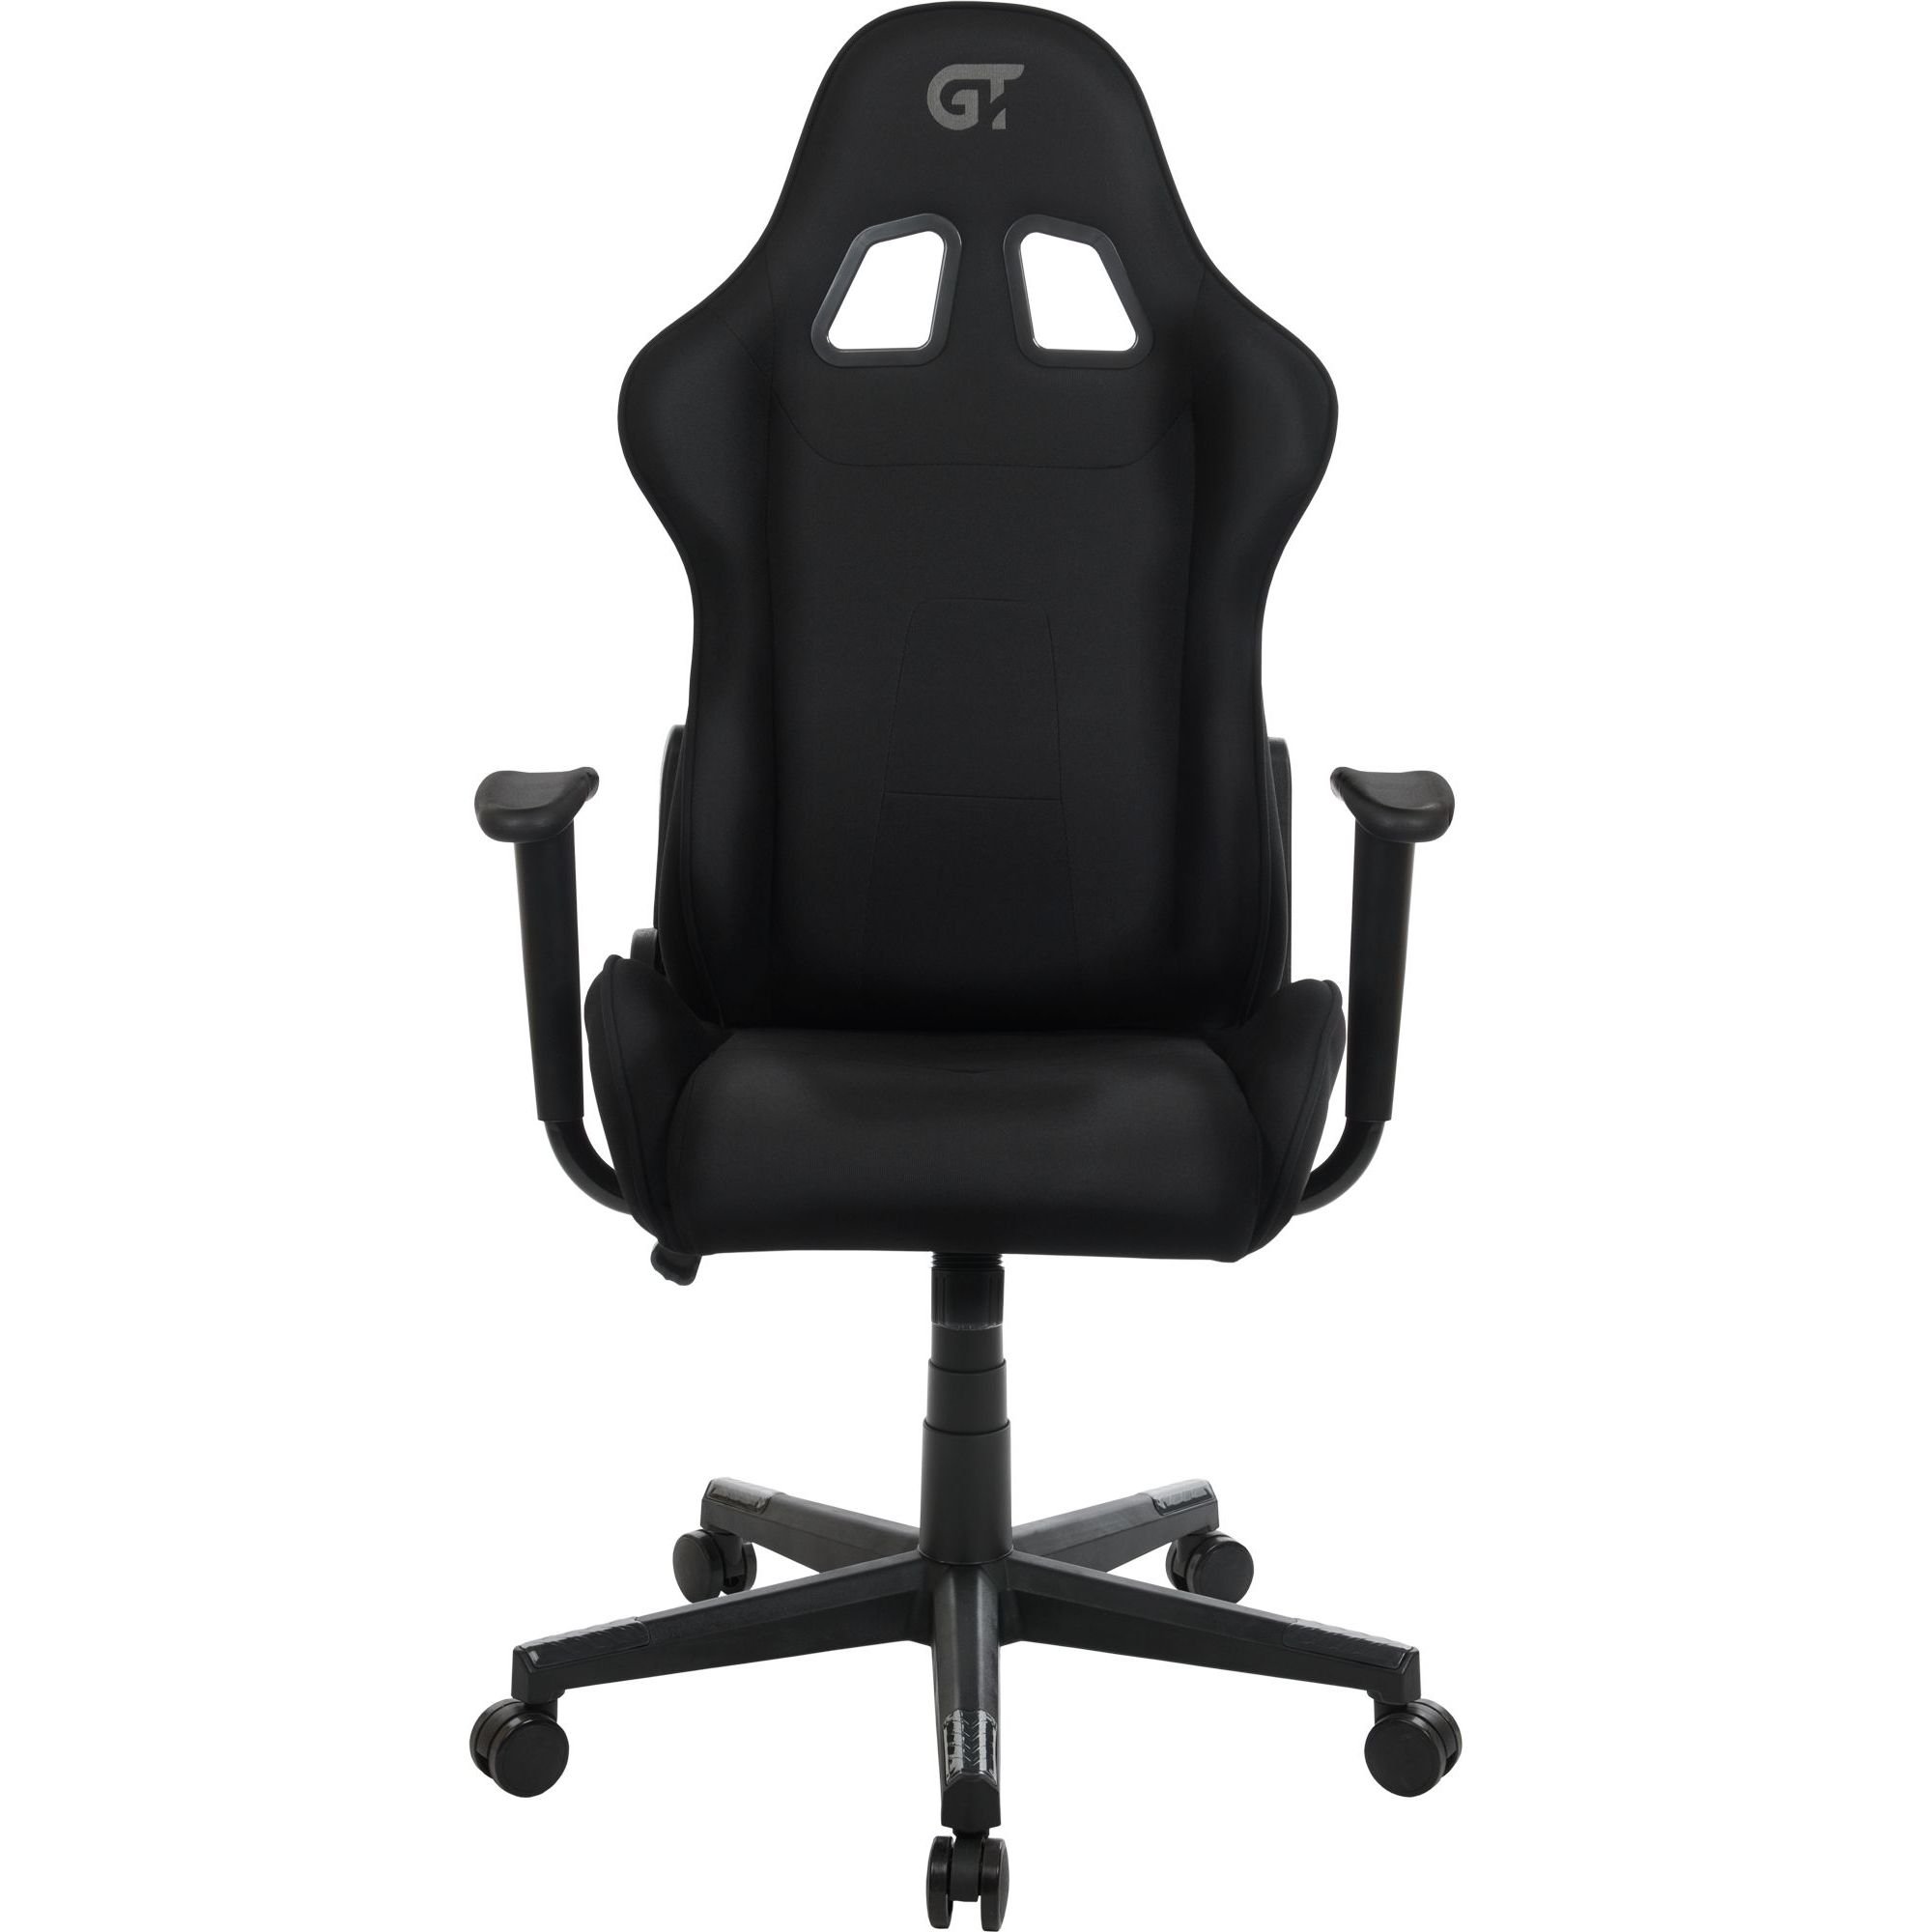 Геймерское кресло GT Racer черное (X-2316 Black) - фото 1